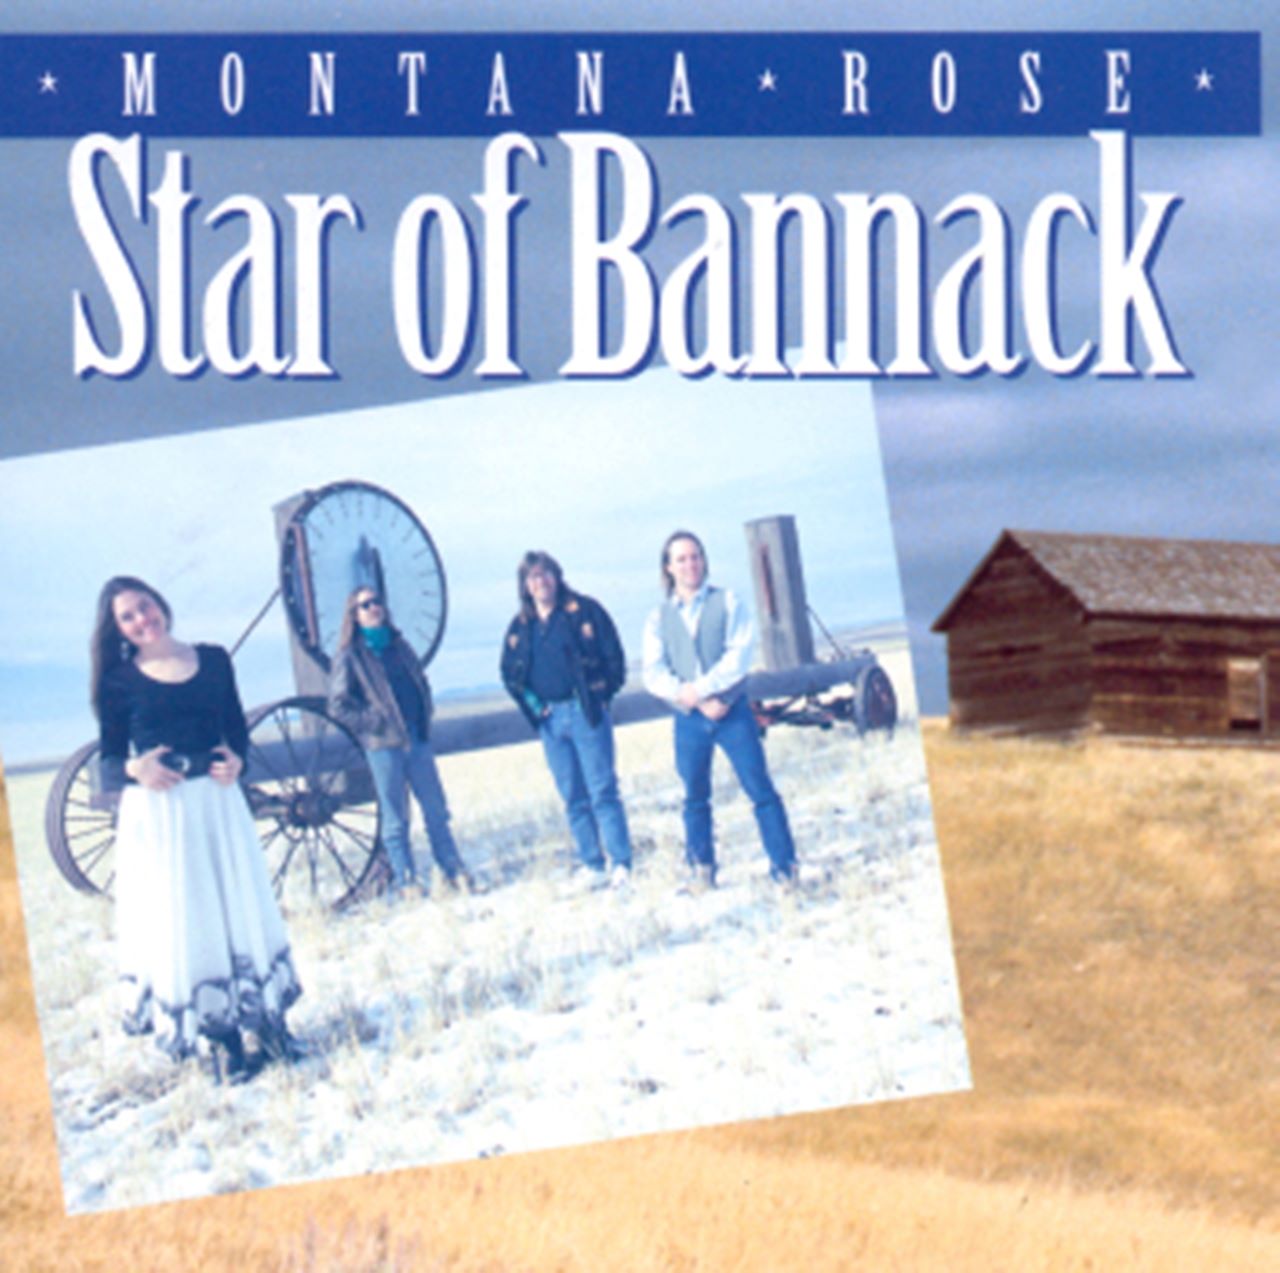 Montana Rose - Star Of Bannack cover album